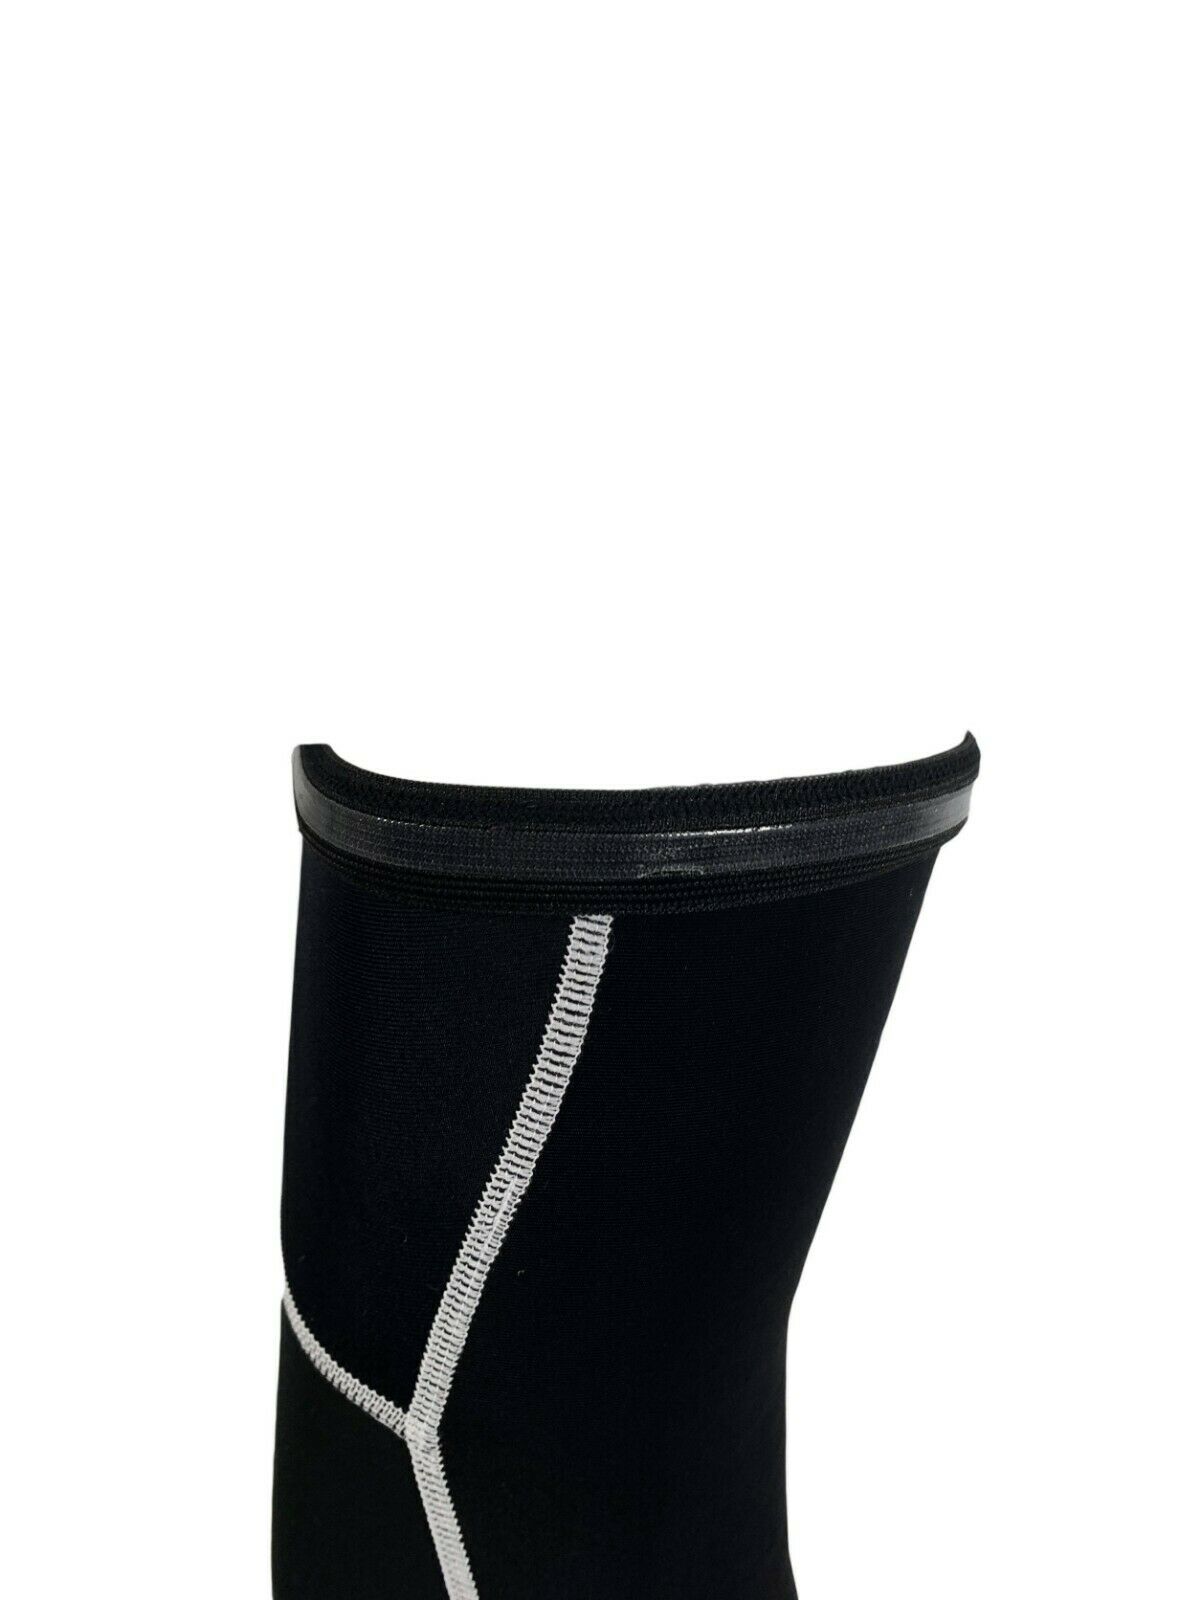 Pitbull Combi Thermal Knee Warmers - Norwegian Design - Sportandleisure.com (6968079057050)